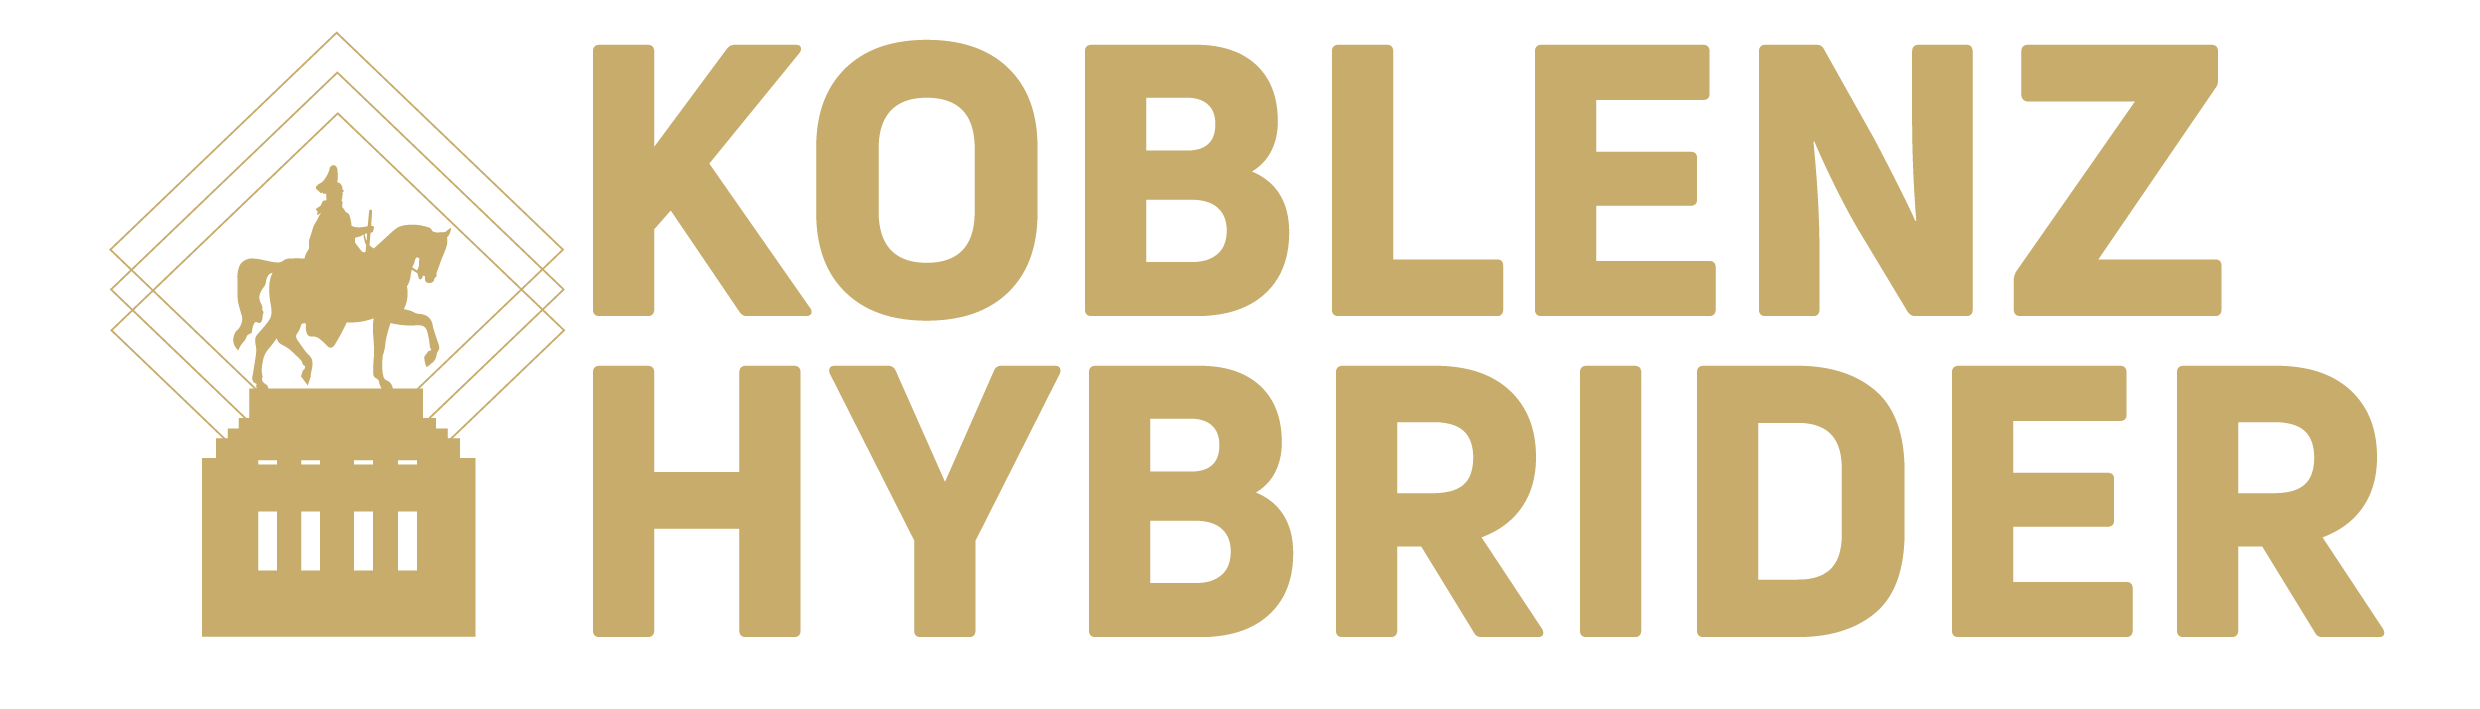 Koblenz Hybrider Logo